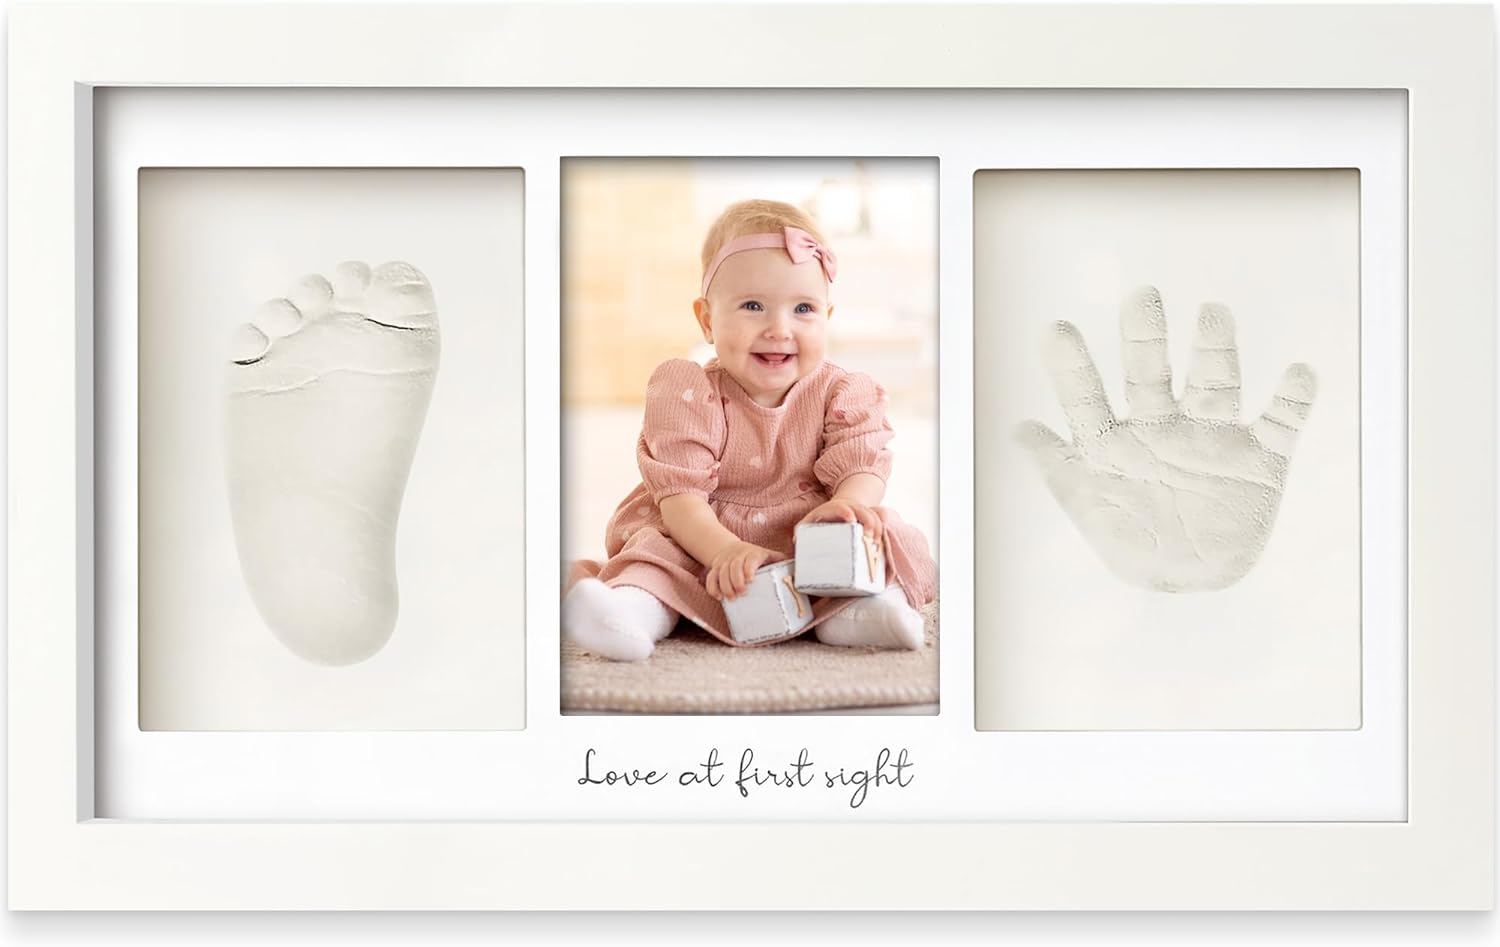 Baby Hand and Footprint Kit - Baby Footprint Kit $19.96